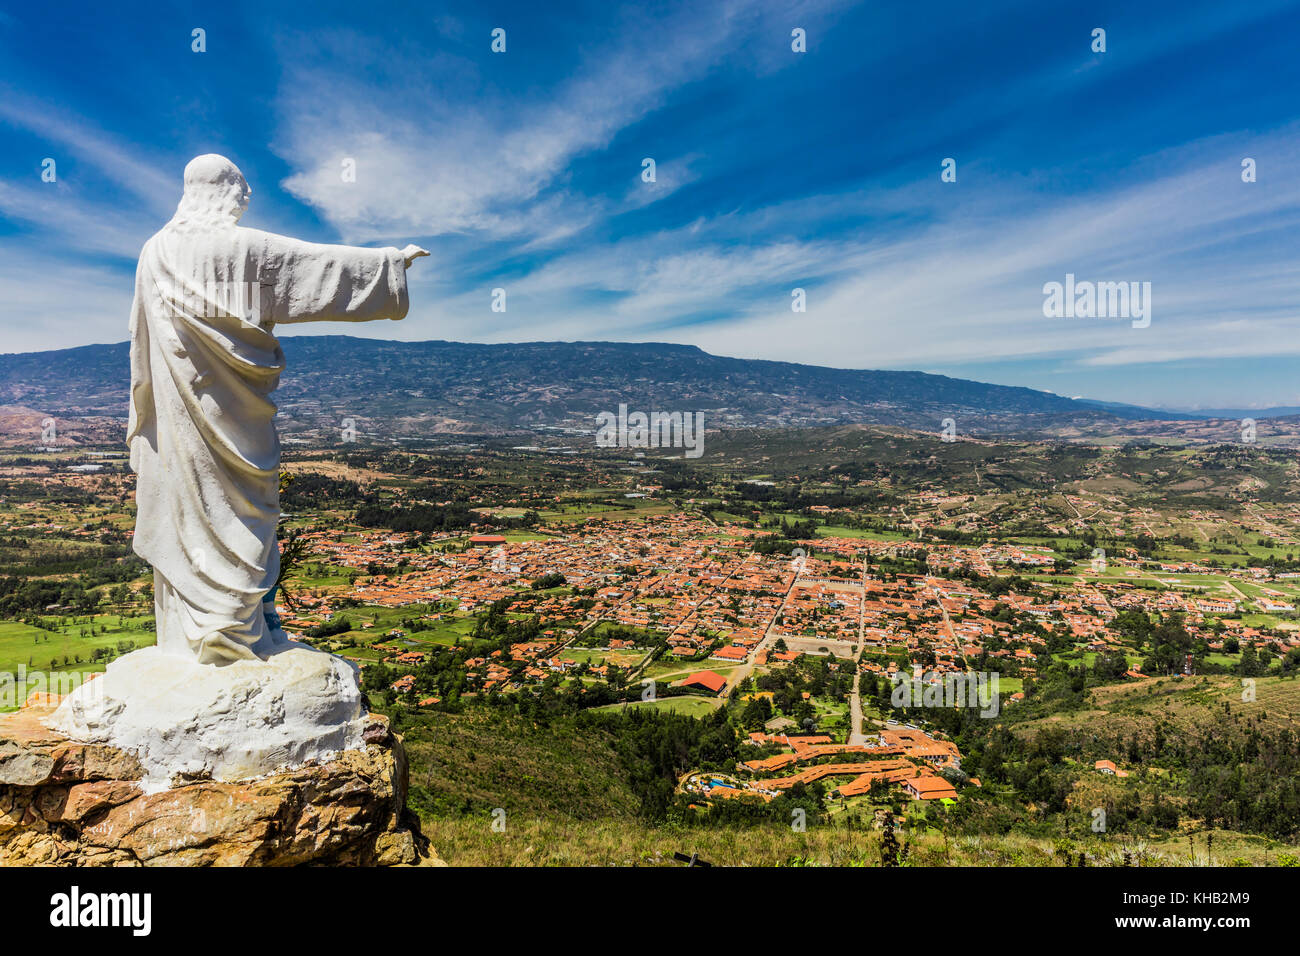 Mirador El Santo and his Jesus statue Villa de Leyva  skyline cityscape Boyaca in Colombia South America Stock Photo